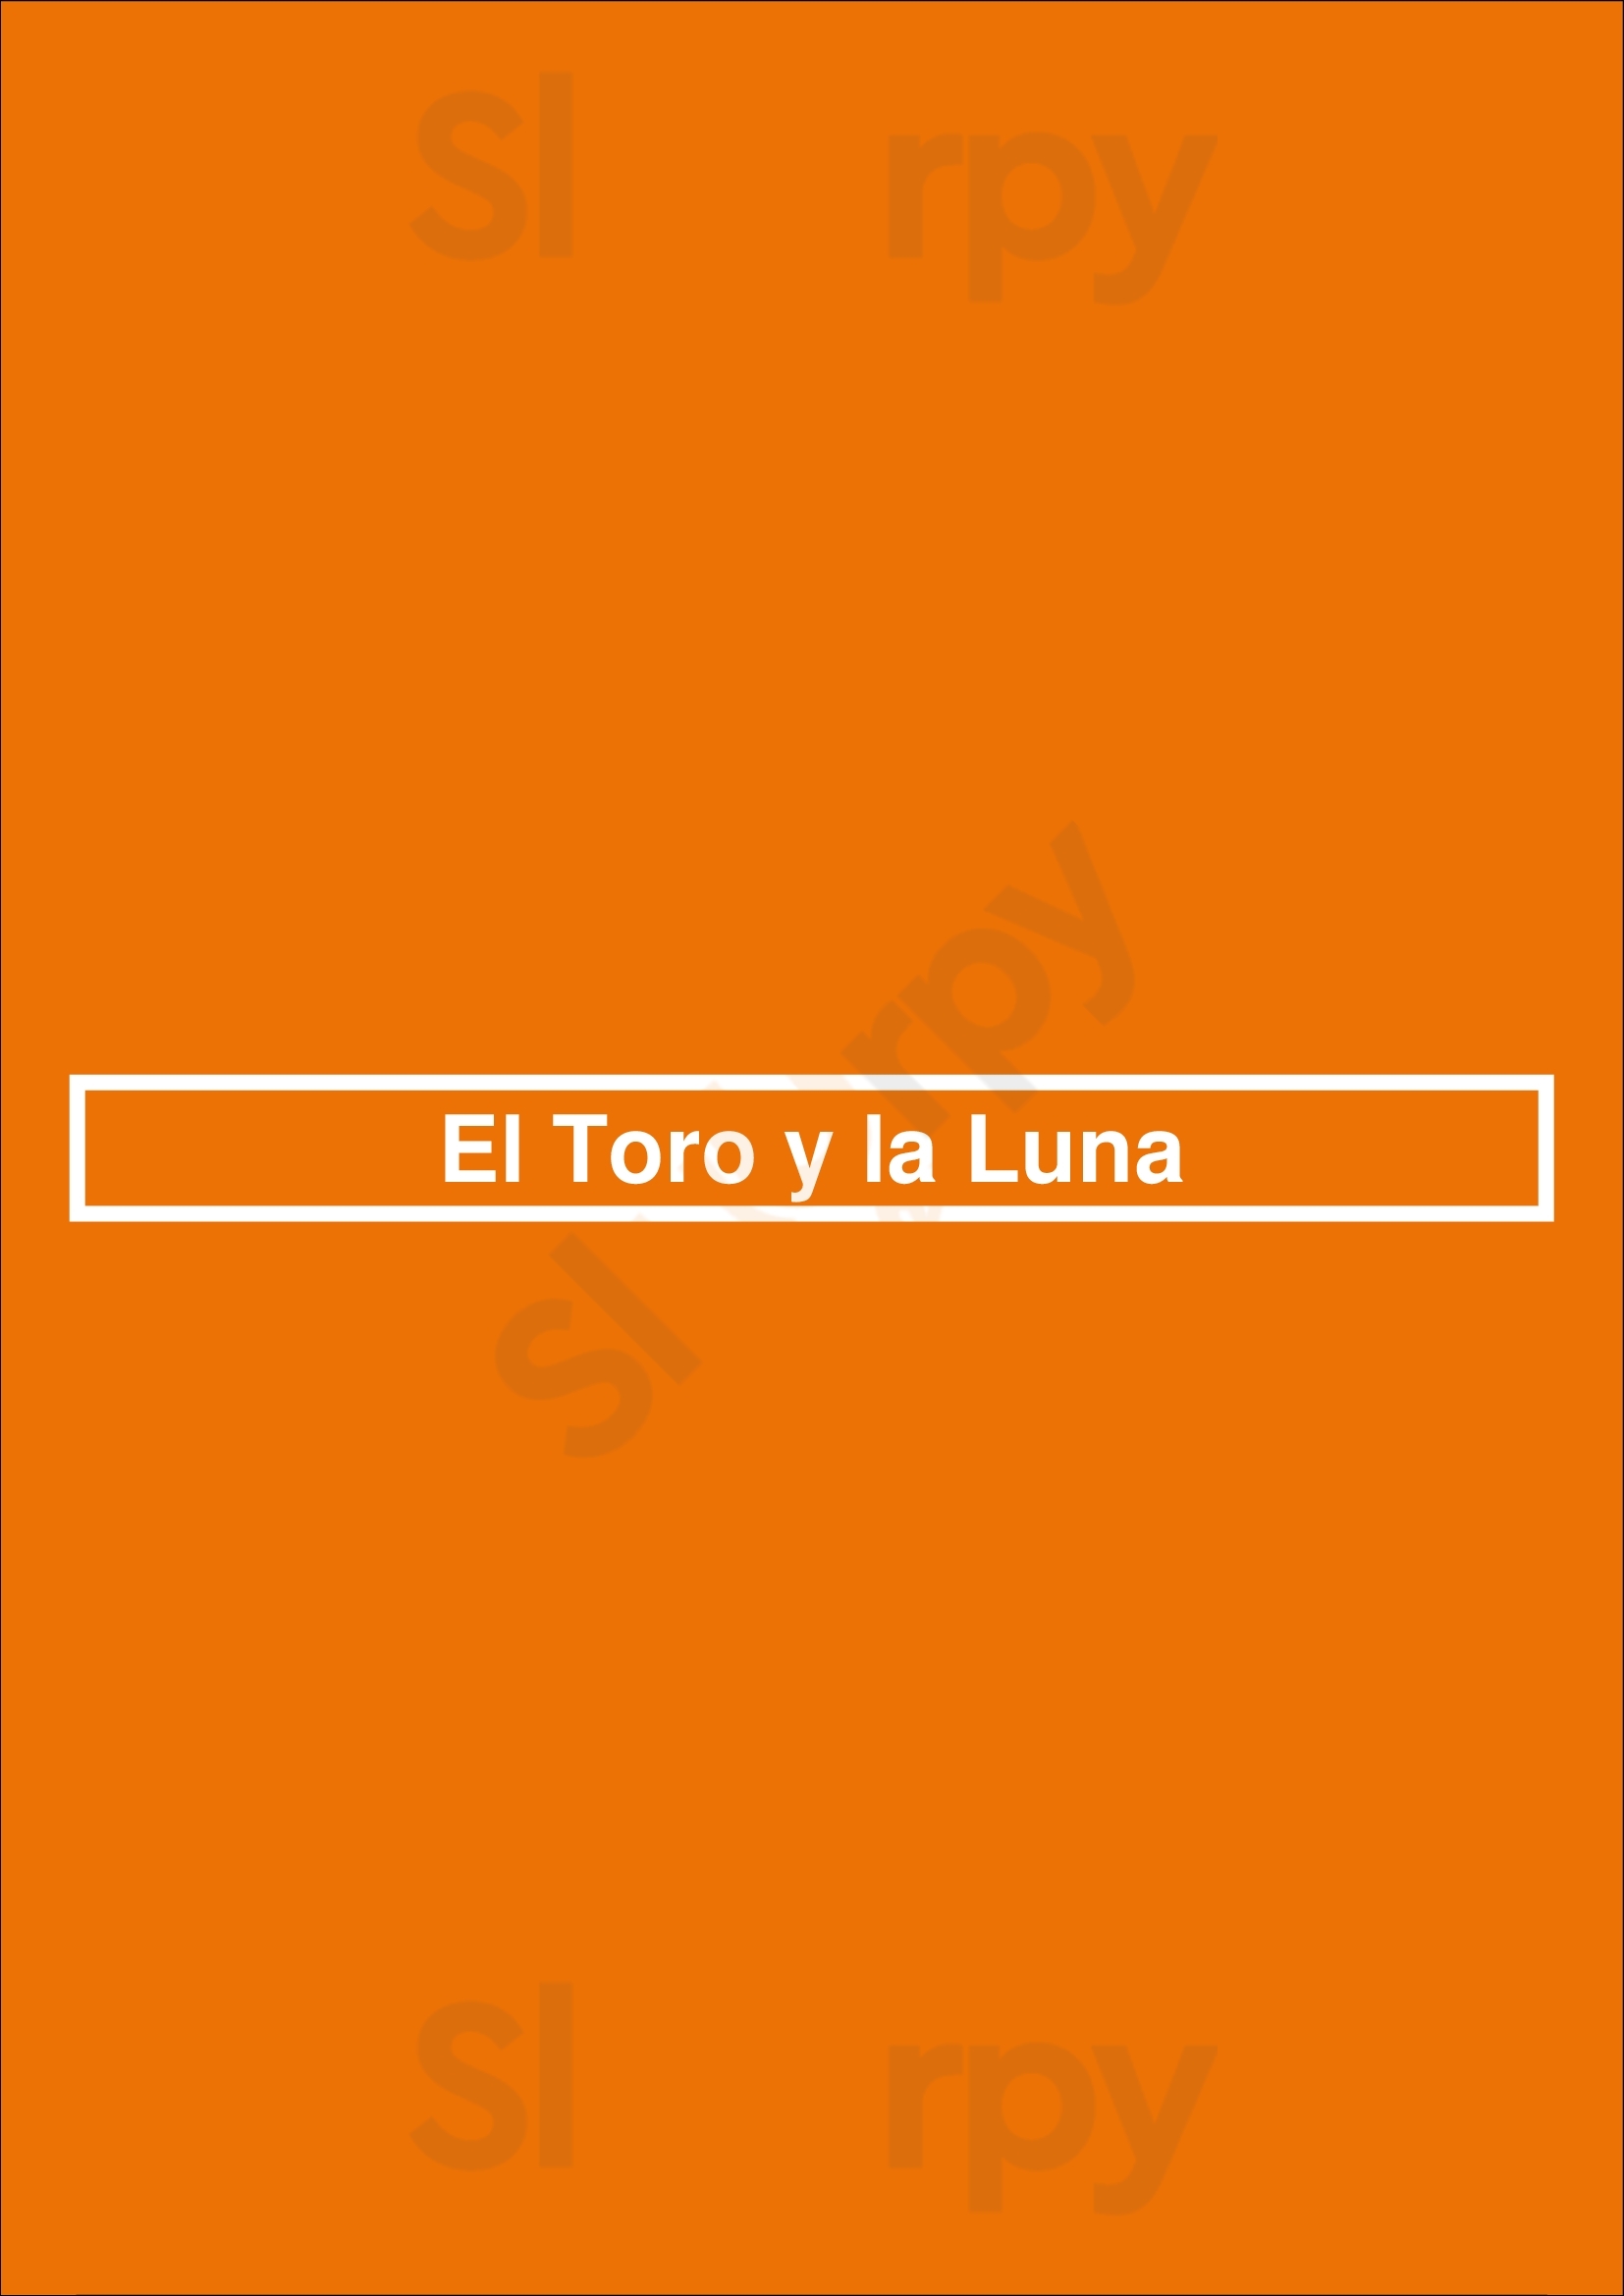 Tablao Flamenco El Toro Y La Luna Valencia Menu - 1